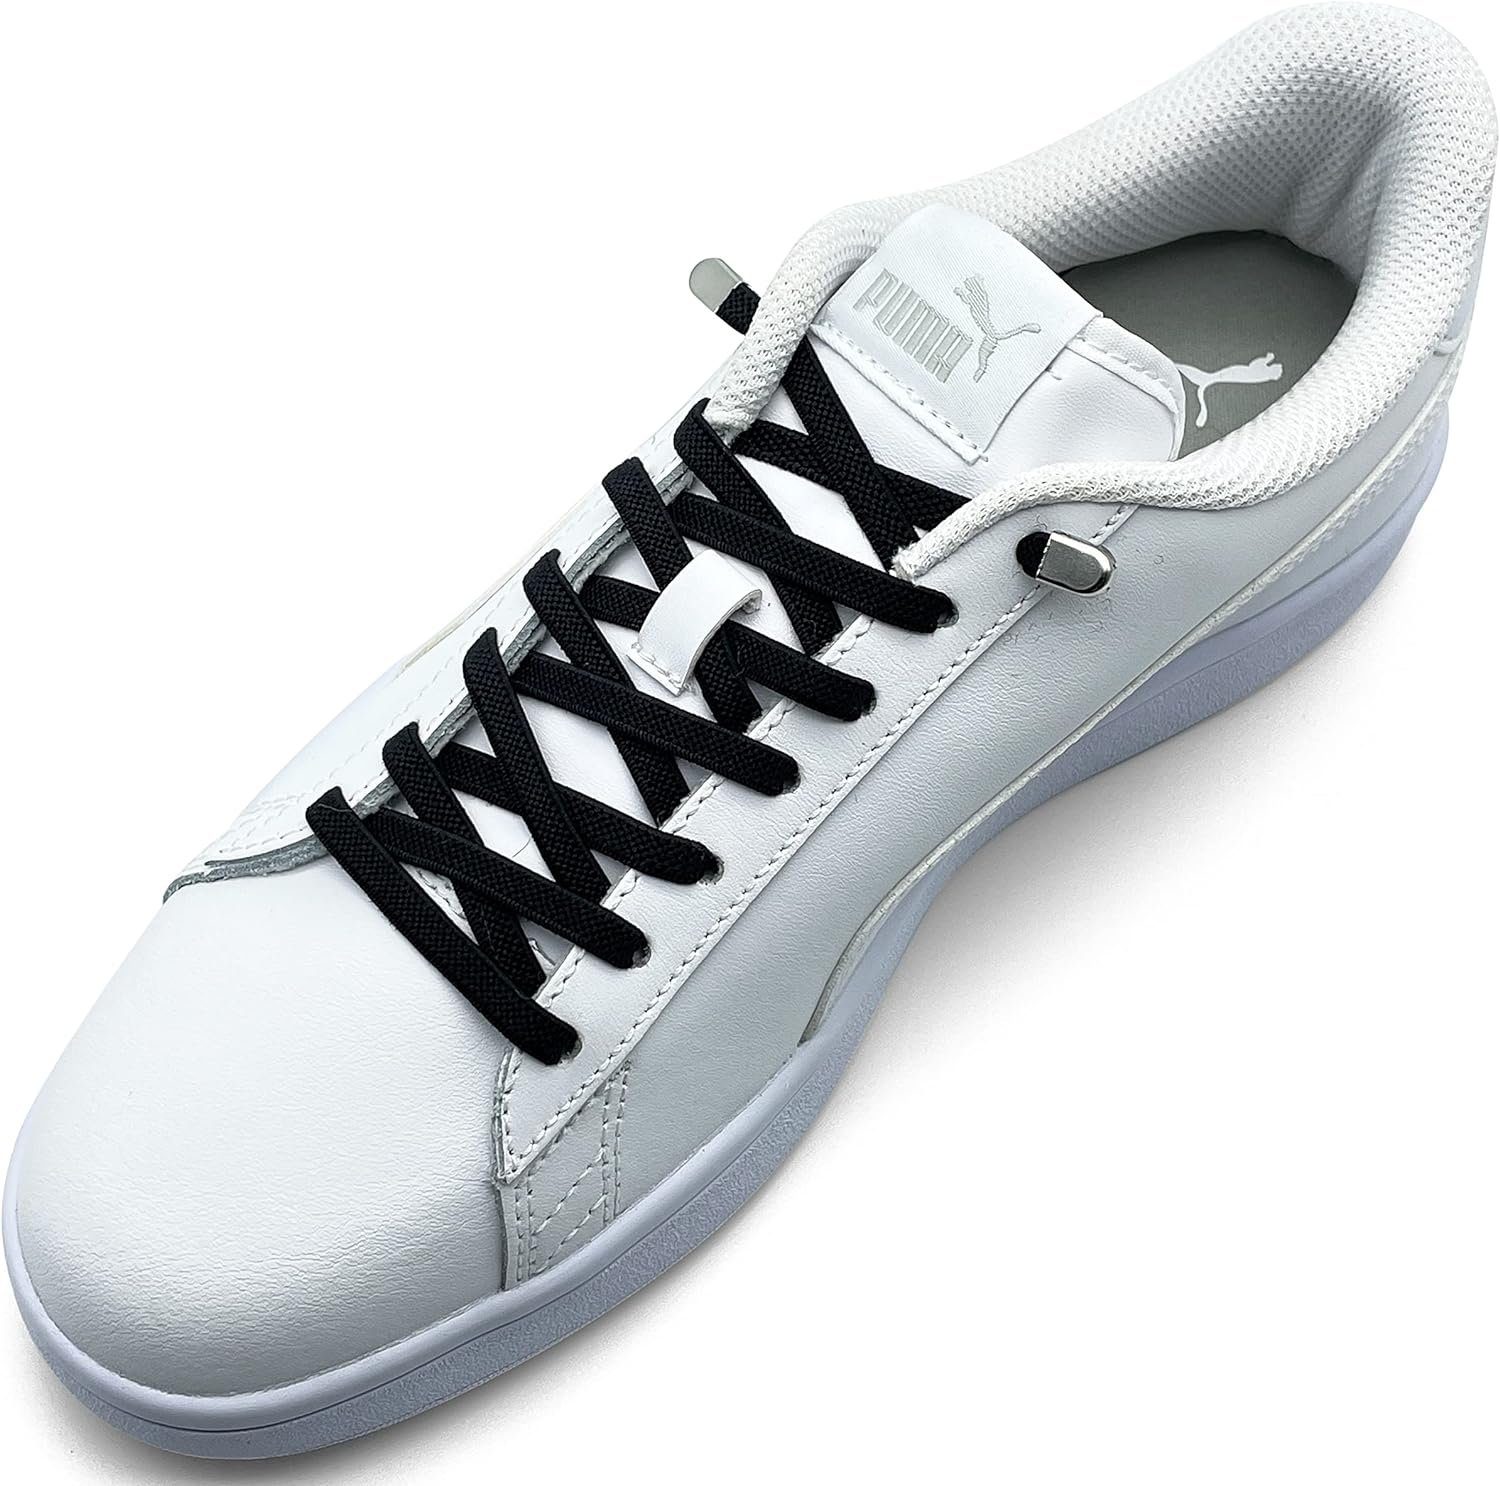 ELANOX Schnürsenkel 4 Stück für 2 Paar Schuhe elastische Schnürsenkel mit Clips, inkl. Enden (Clips) - 8 St. in silber schwarz